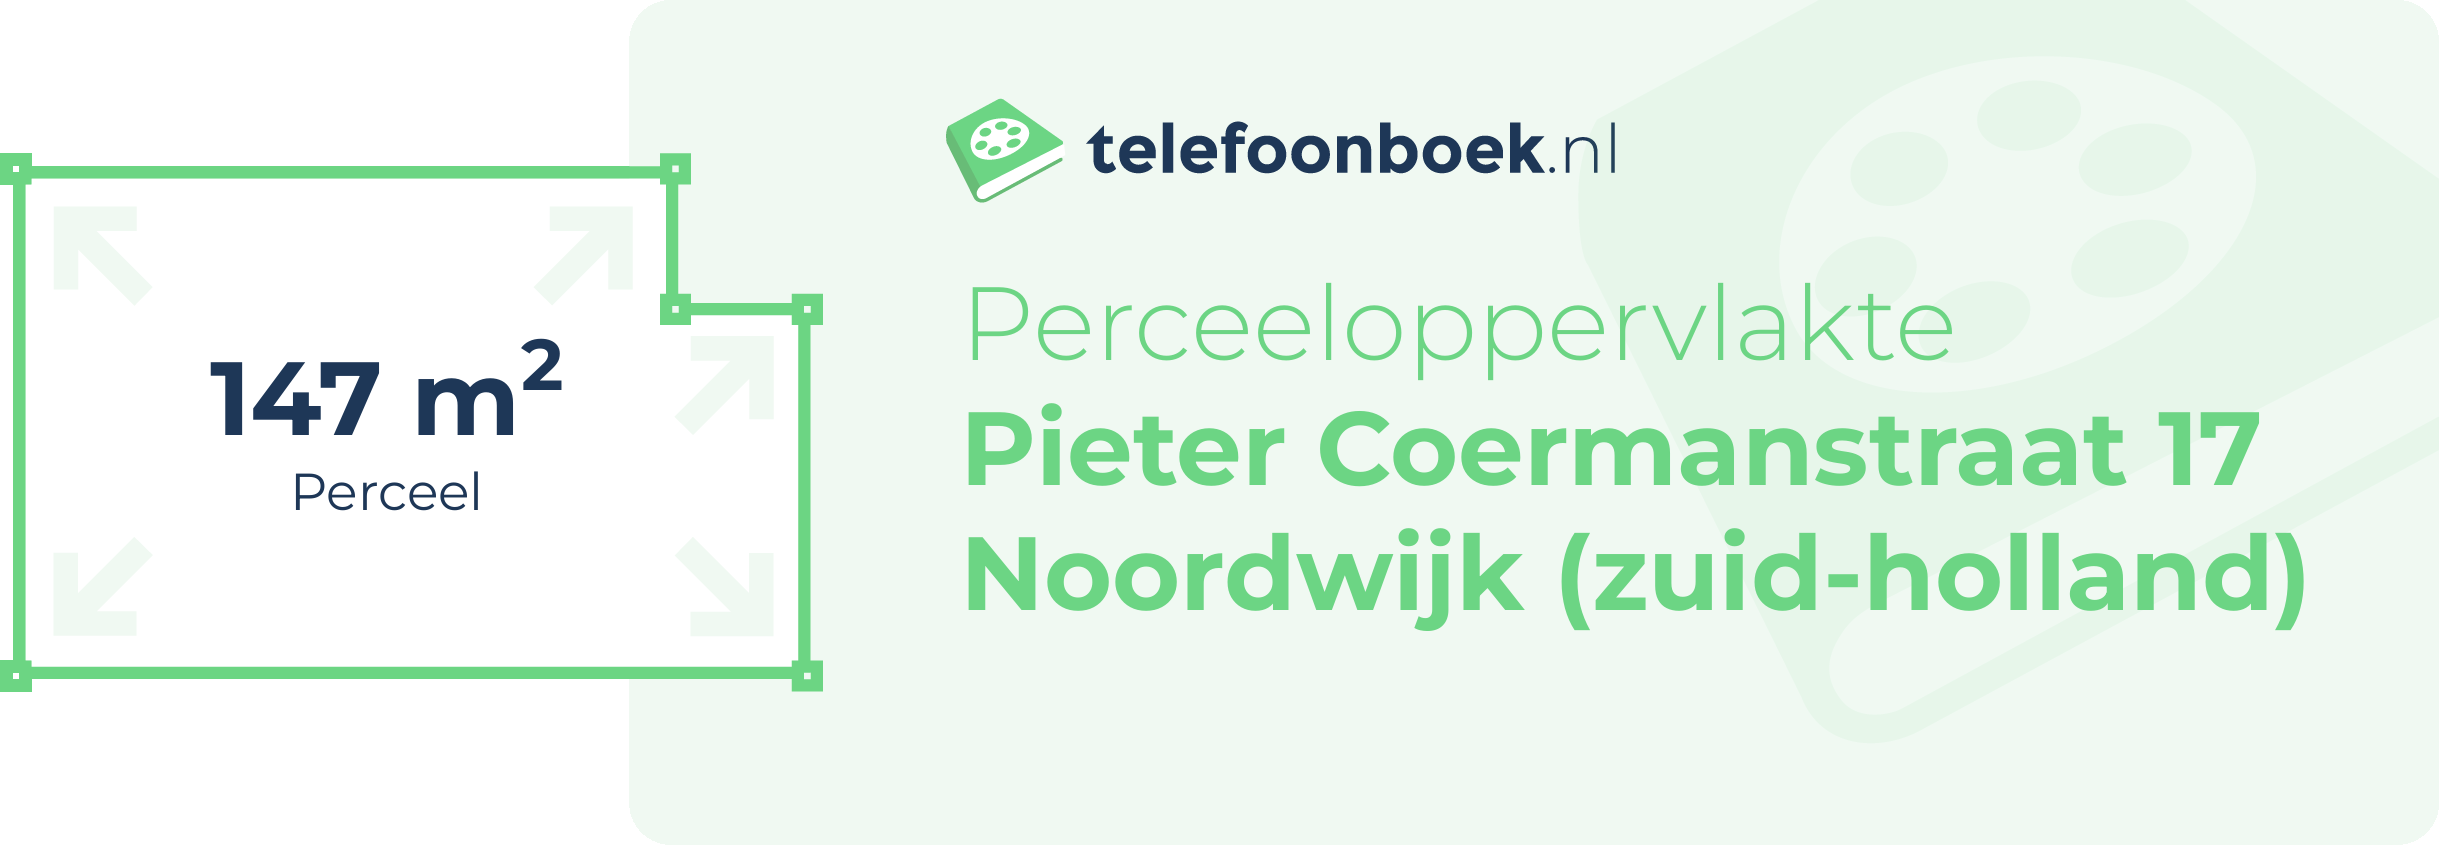 Perceeloppervlakte Pieter Coermanstraat 17 Noordwijk (Zuid-Holland)